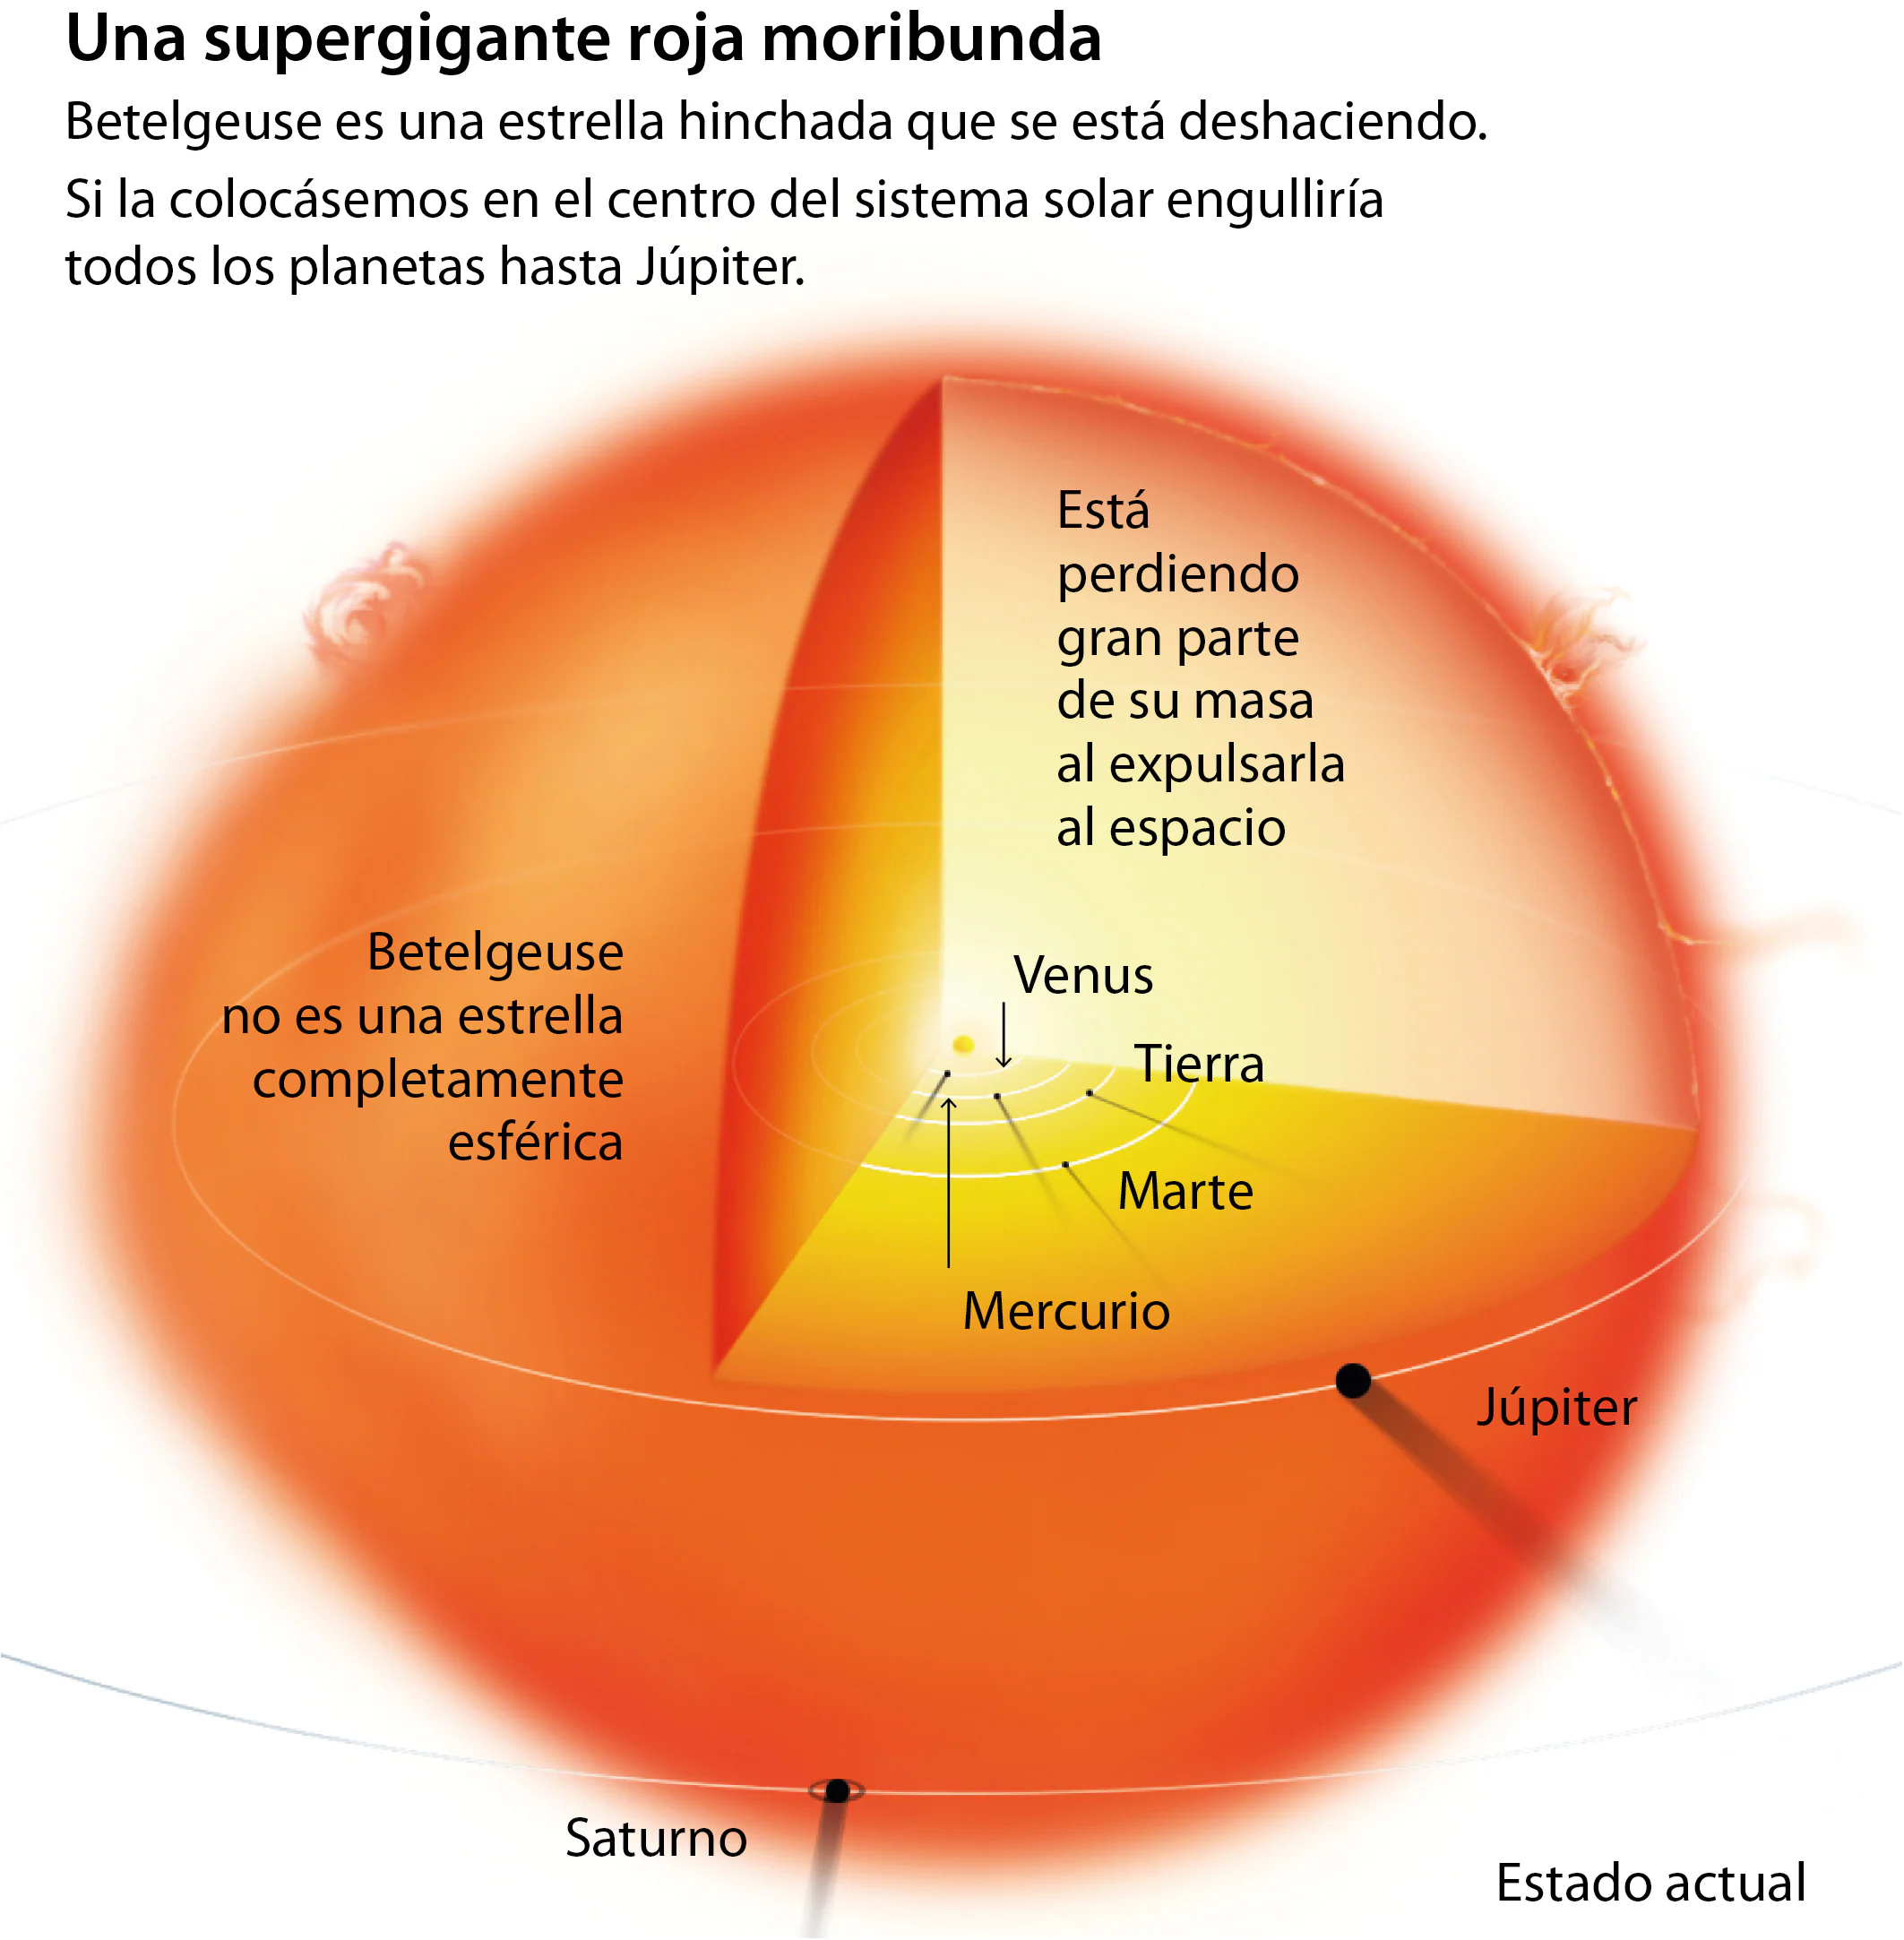 Betelgeuse, la estrella que morirá con la supernova más brillante de la historia